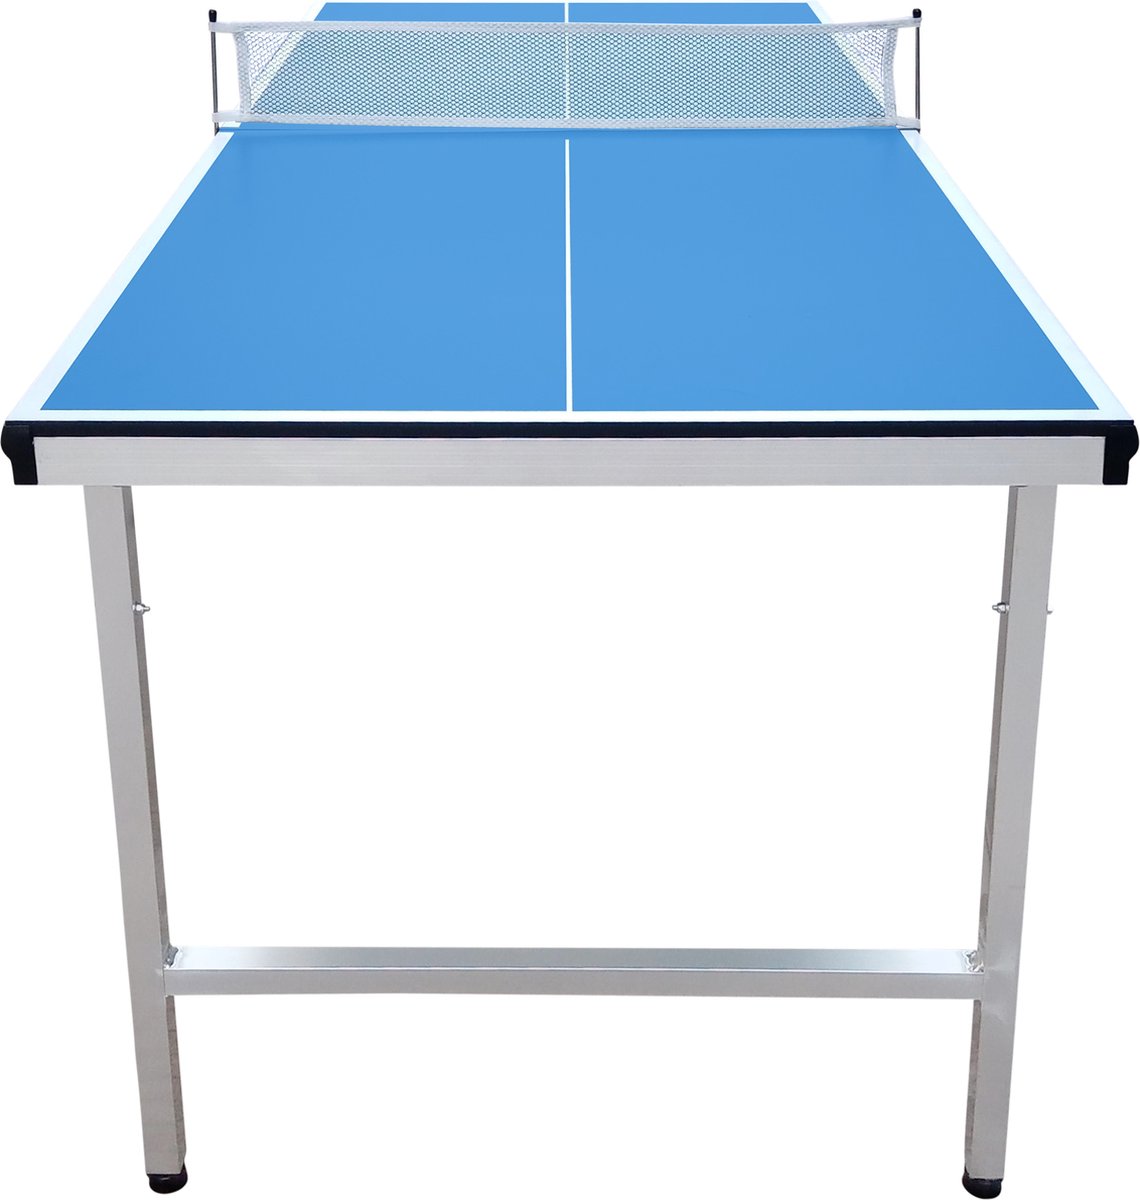 Table de ping-pong Cougar Deluxe 2800 Plein air Blauw - Terrain de jeu  ACP